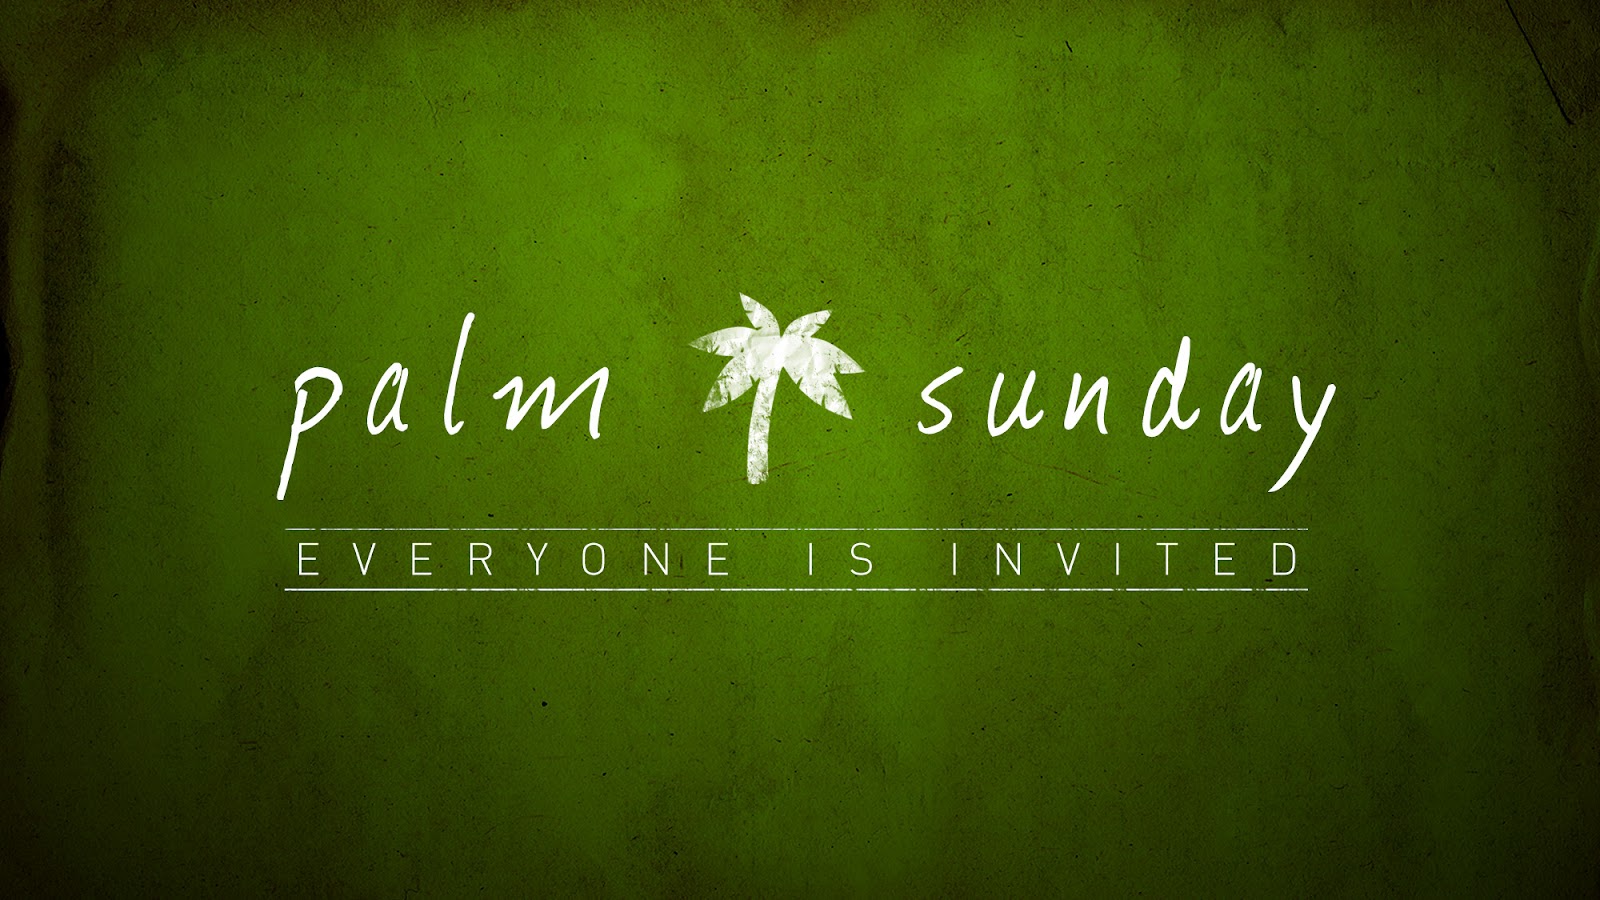 Palm Sunday Greetings 